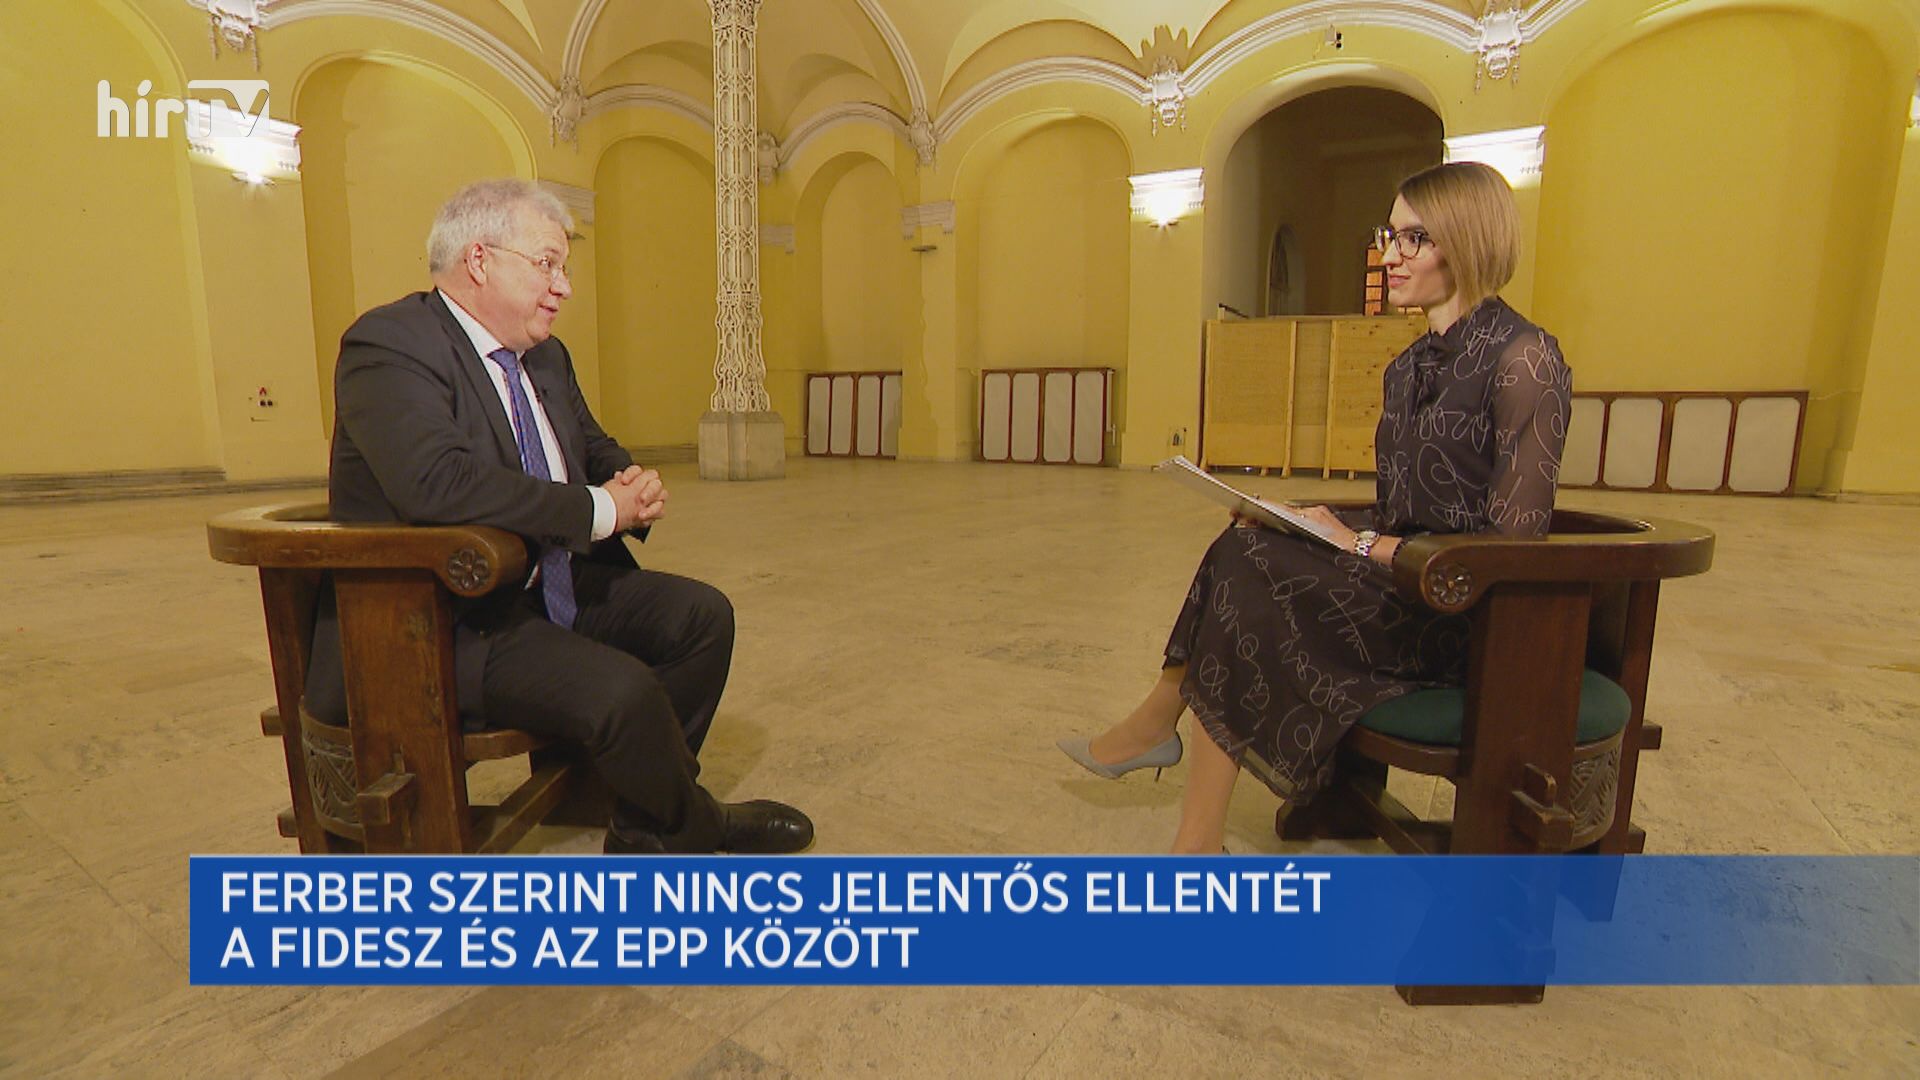 Európai híradó: Ferber szerint nincs jelentős ellentét a Fidesz és az EPP között